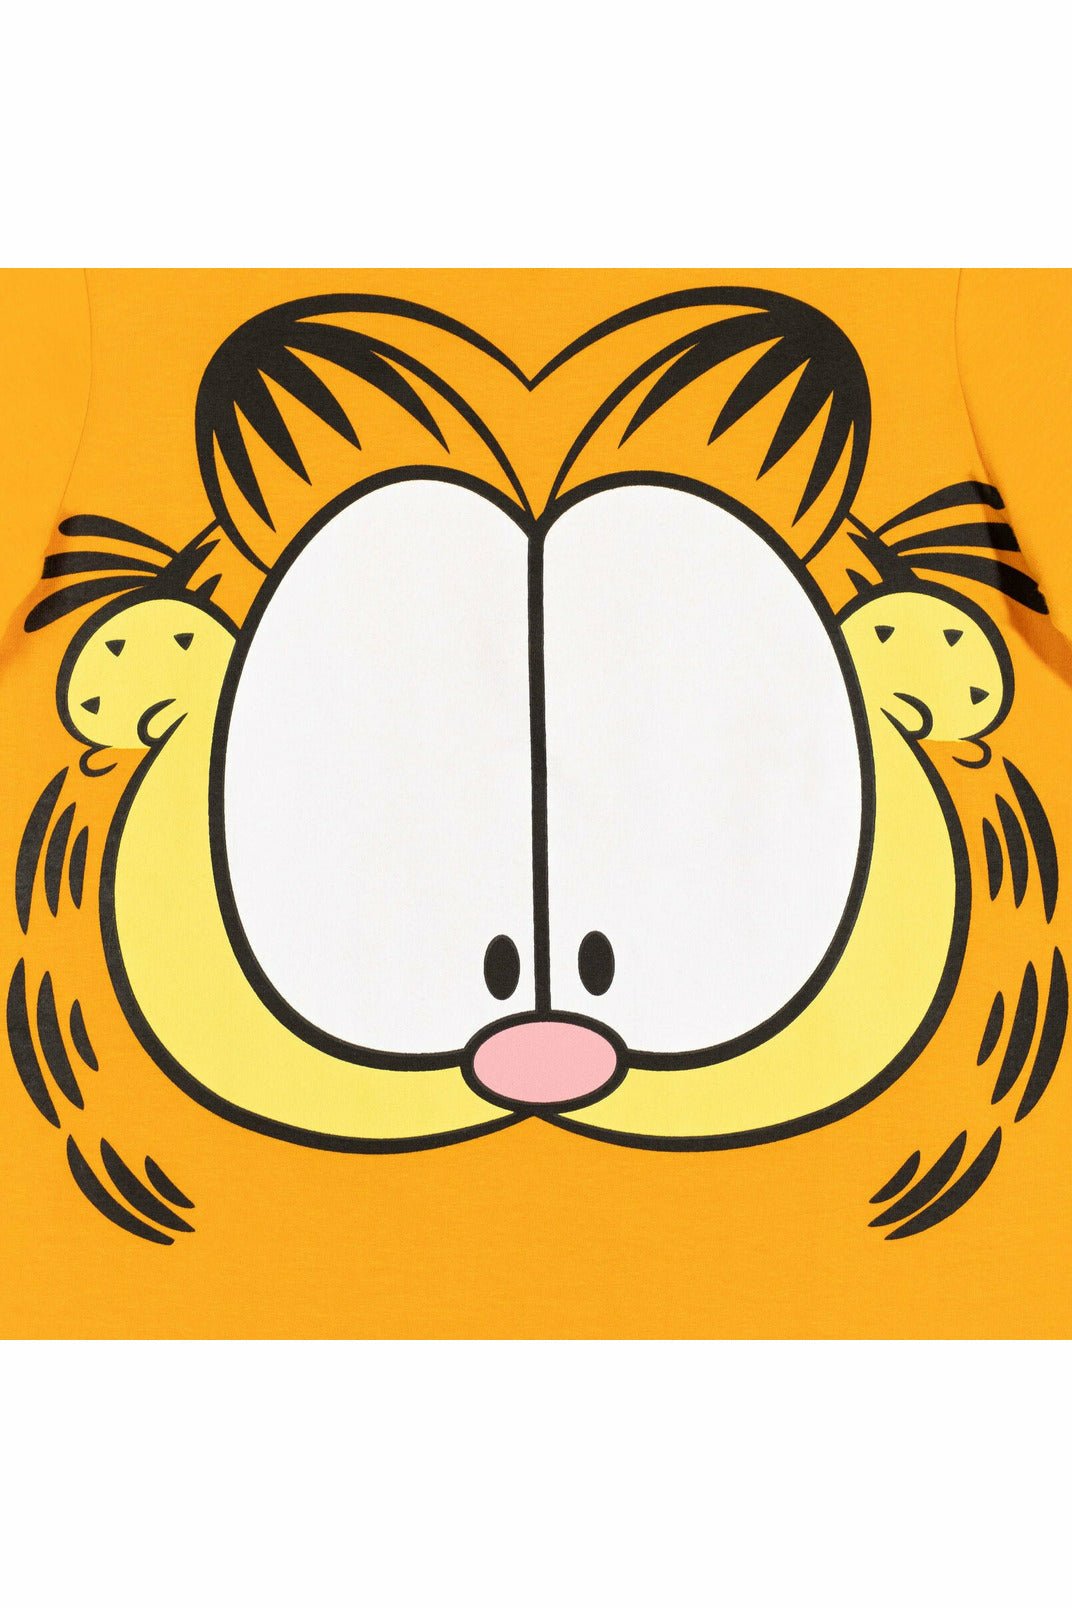 Garfield 3 Pack Graphic T-Shirt - imagikids